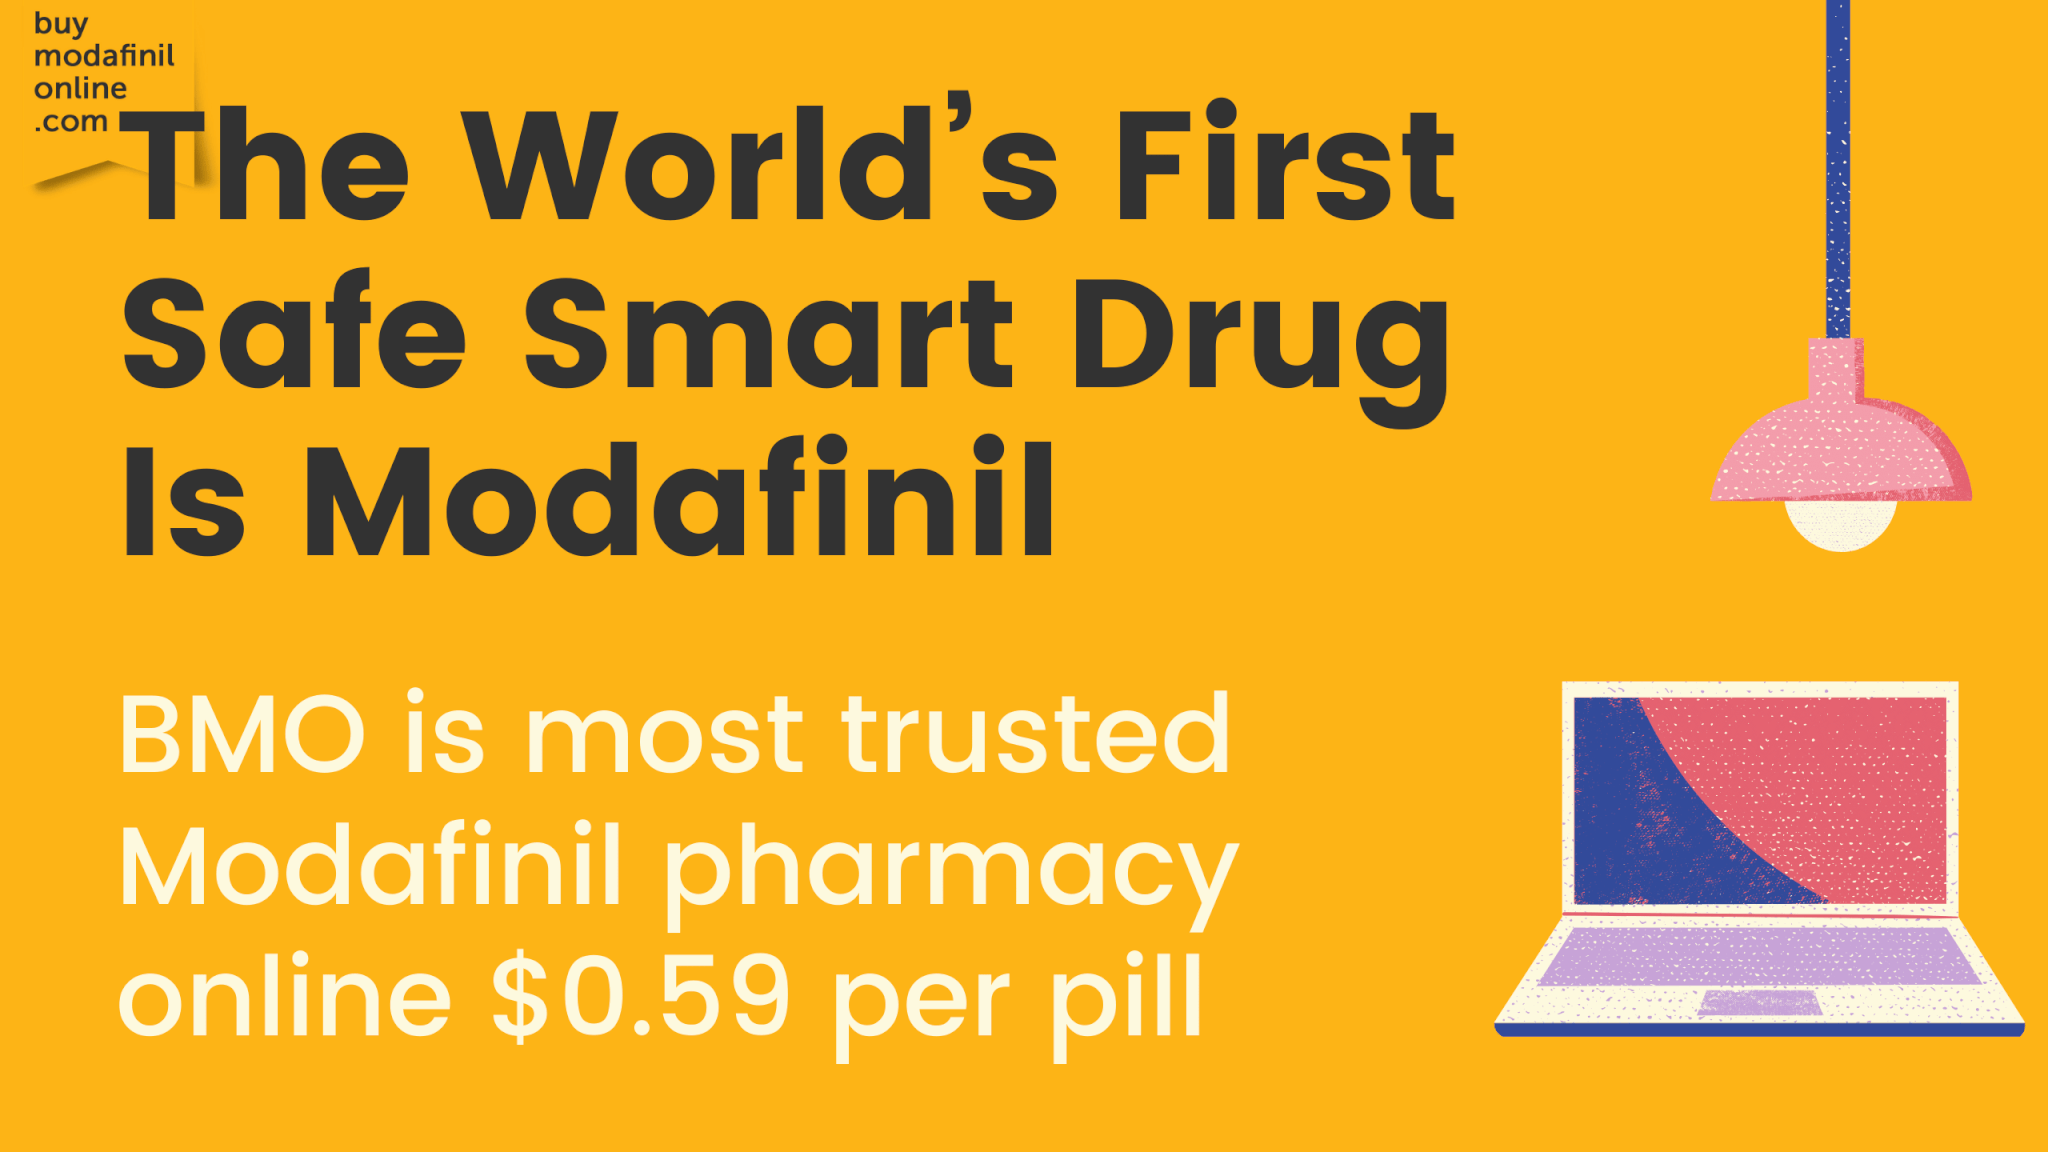 The World's First Safe Smart Drug